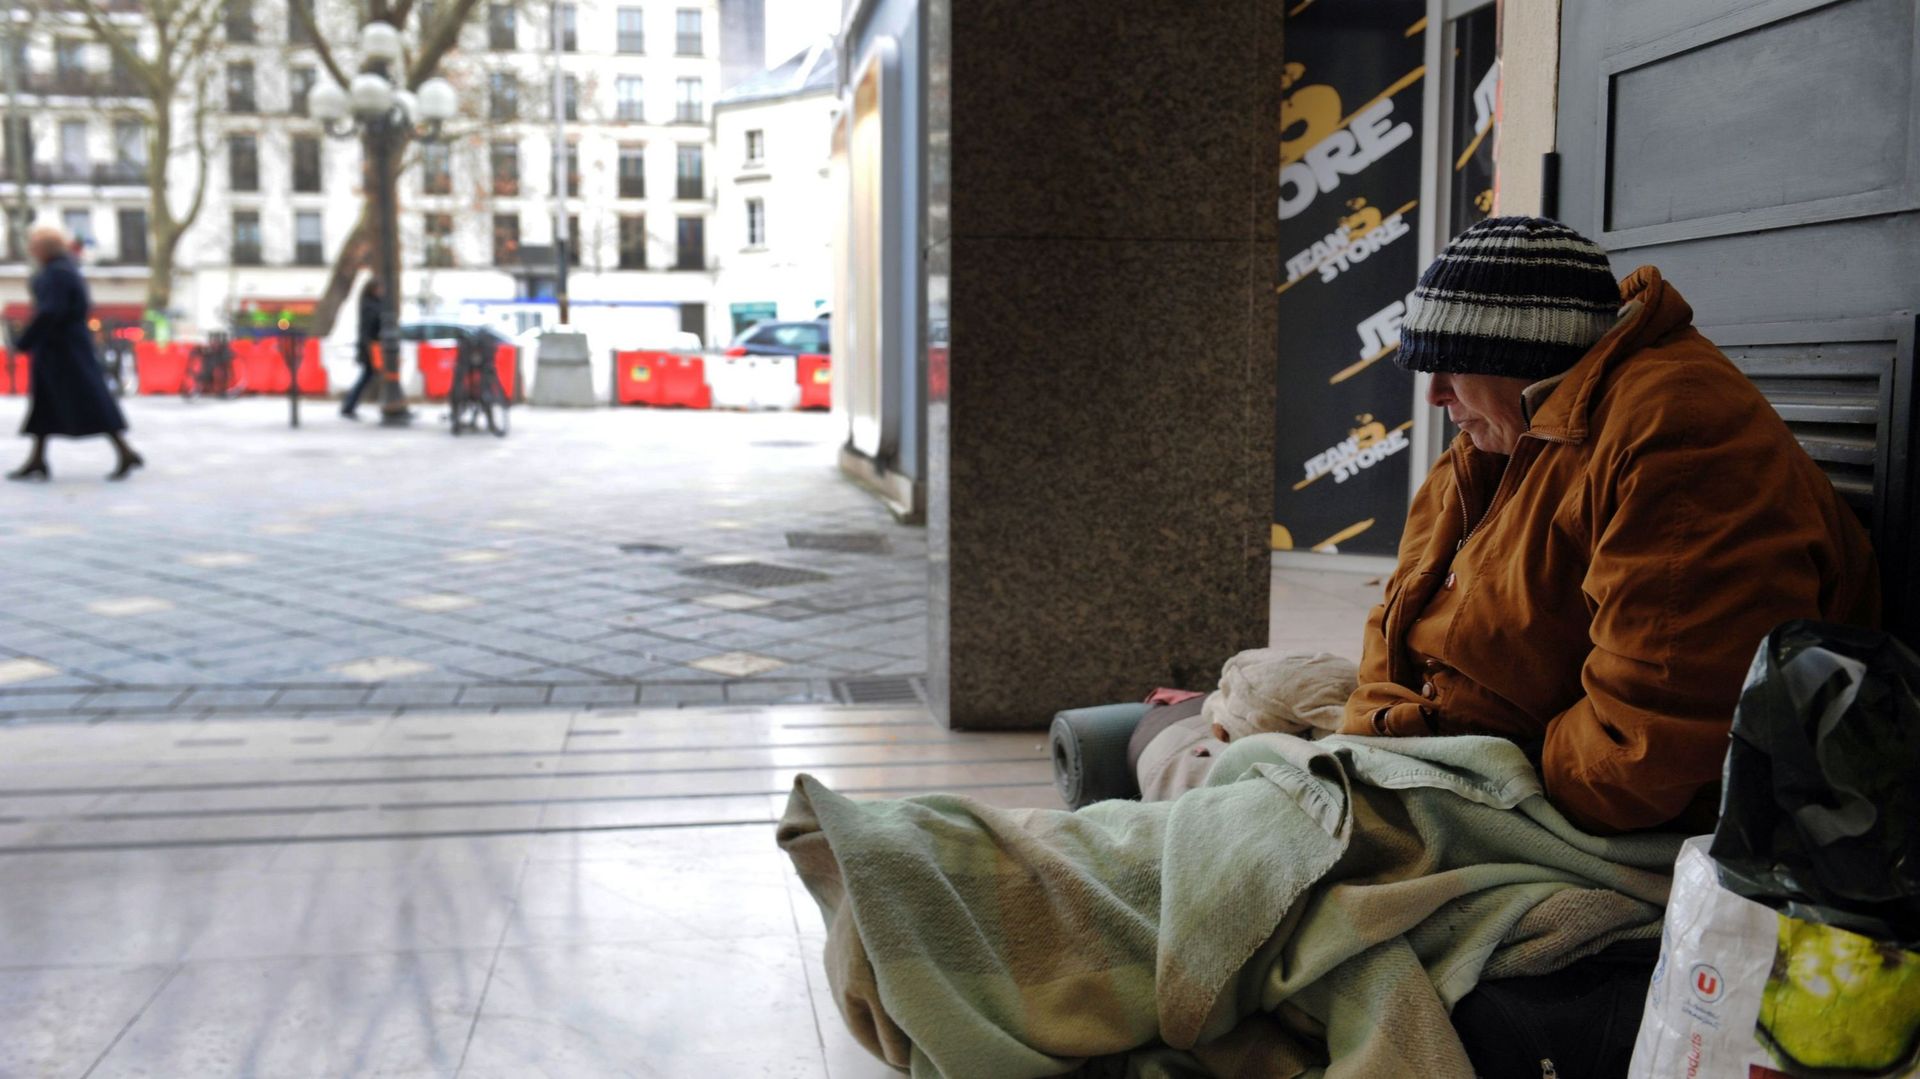 La Ville de Liège et ses partenaires sociaux organisent un recensement de personnes sans-abri durant la semaine du 26 au 30 octobre (photo d'illustration)